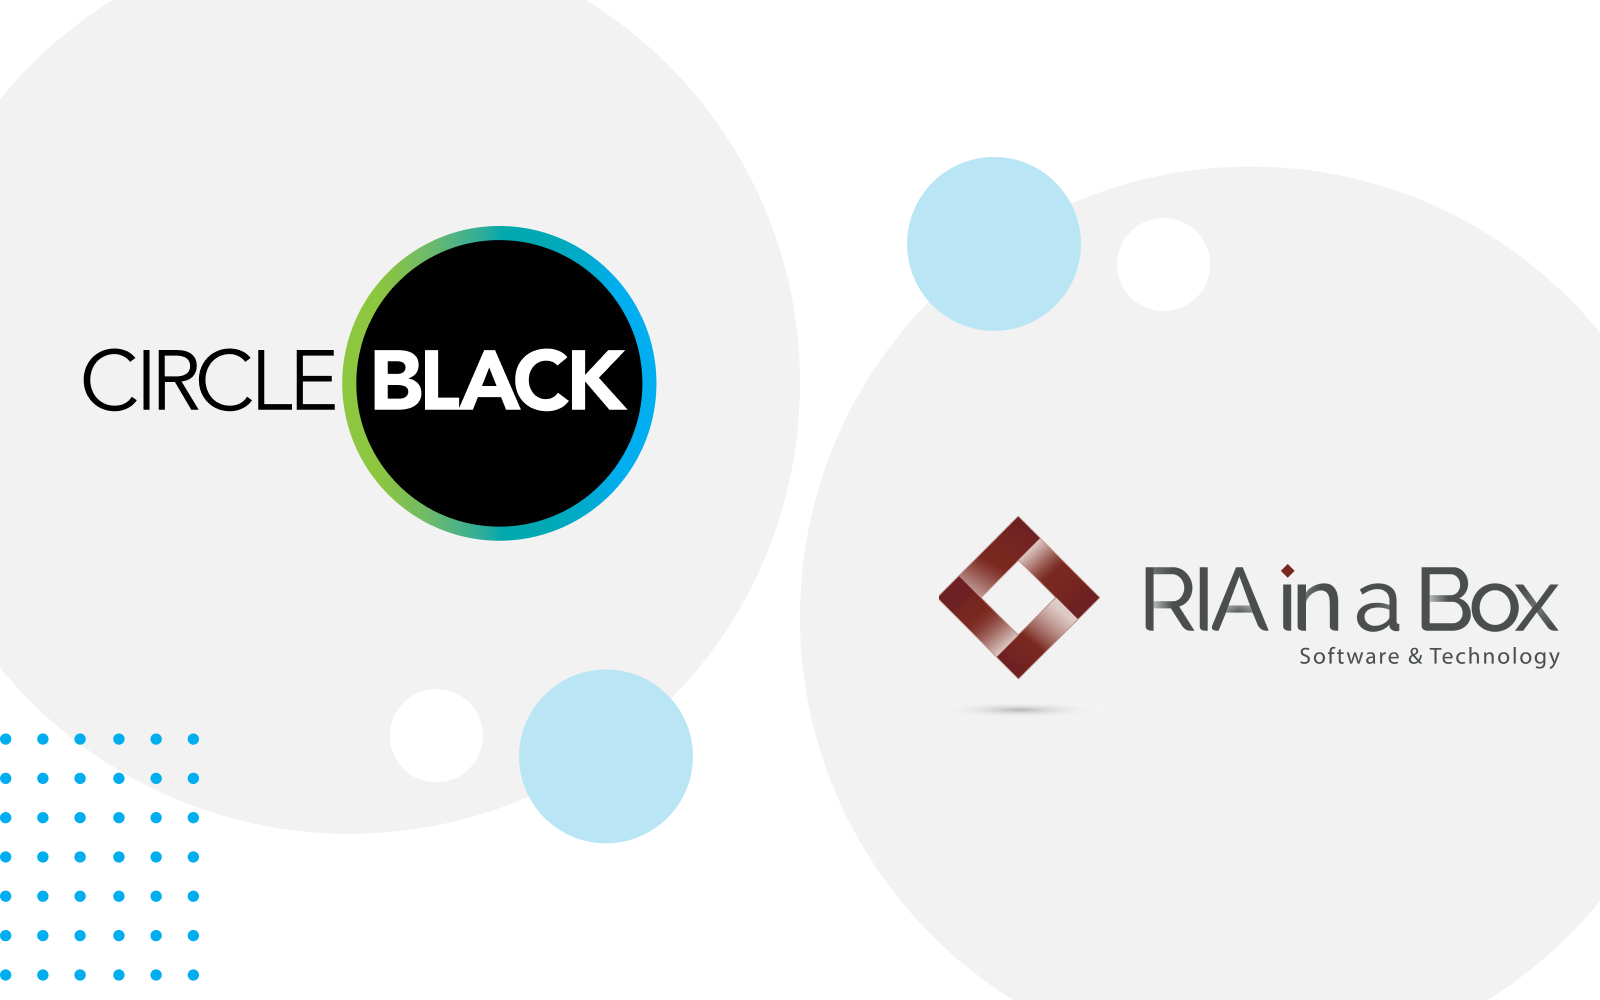 CircleBlack & RIA in a Box logos